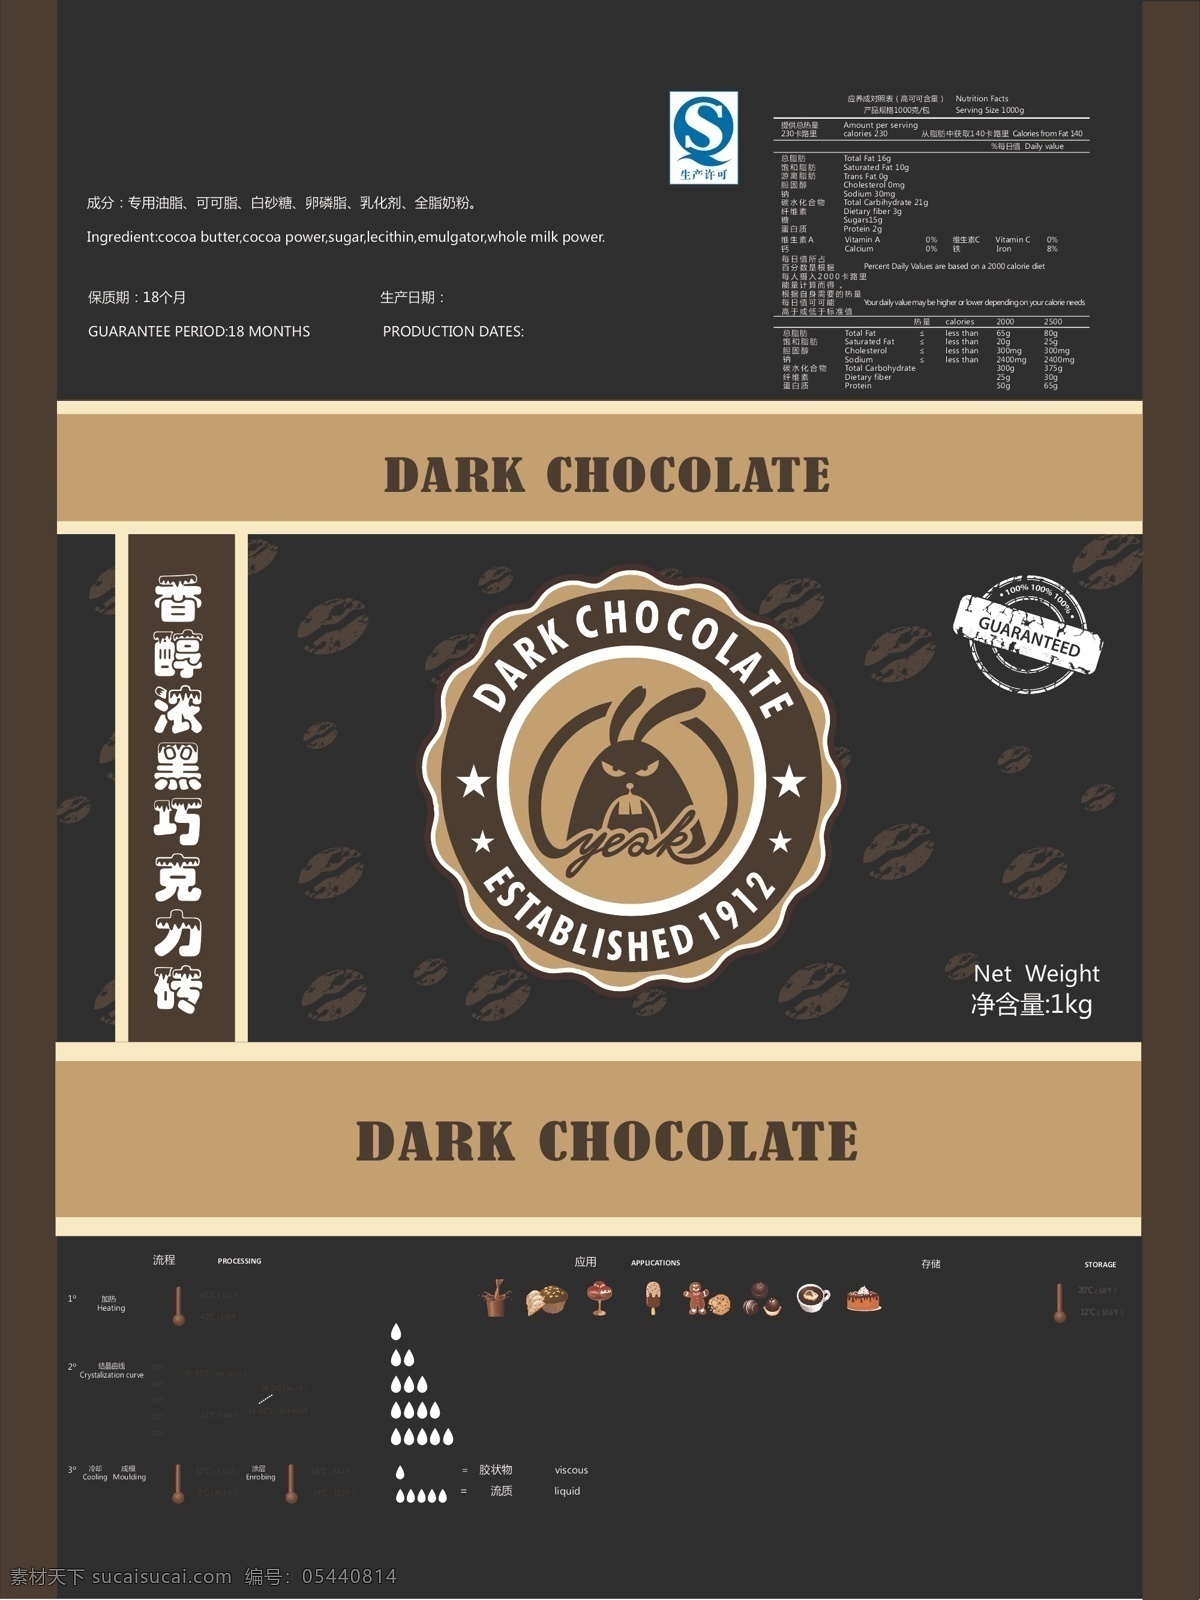 横 版 巧克力 包装 黑色背景 横版 巧克力包装 图标 巧克力砖 原创设计 原创包装设计